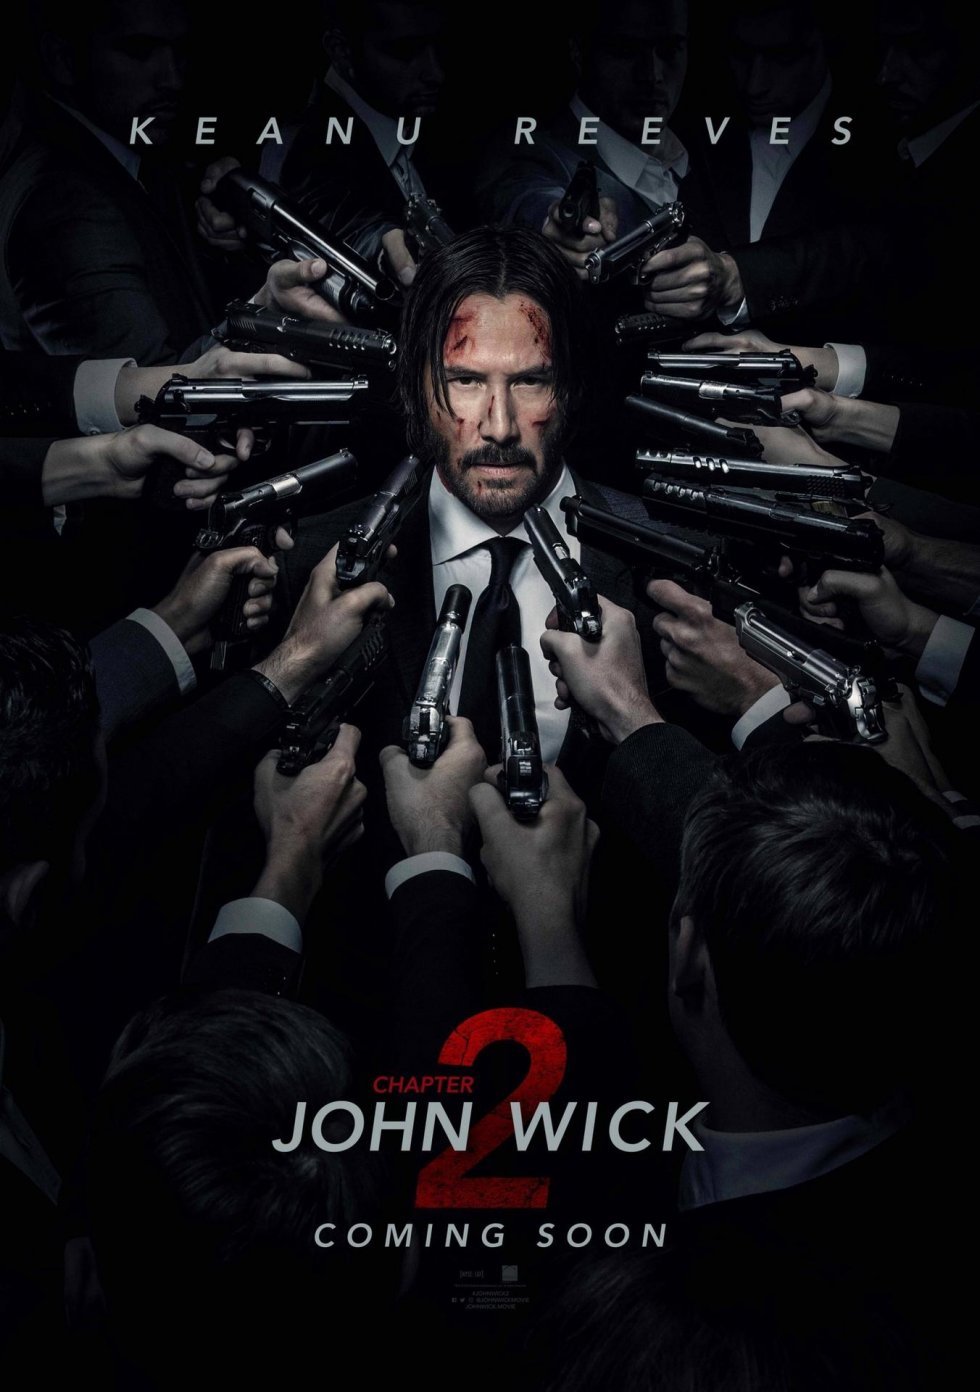 Første trailer til John Wick 2